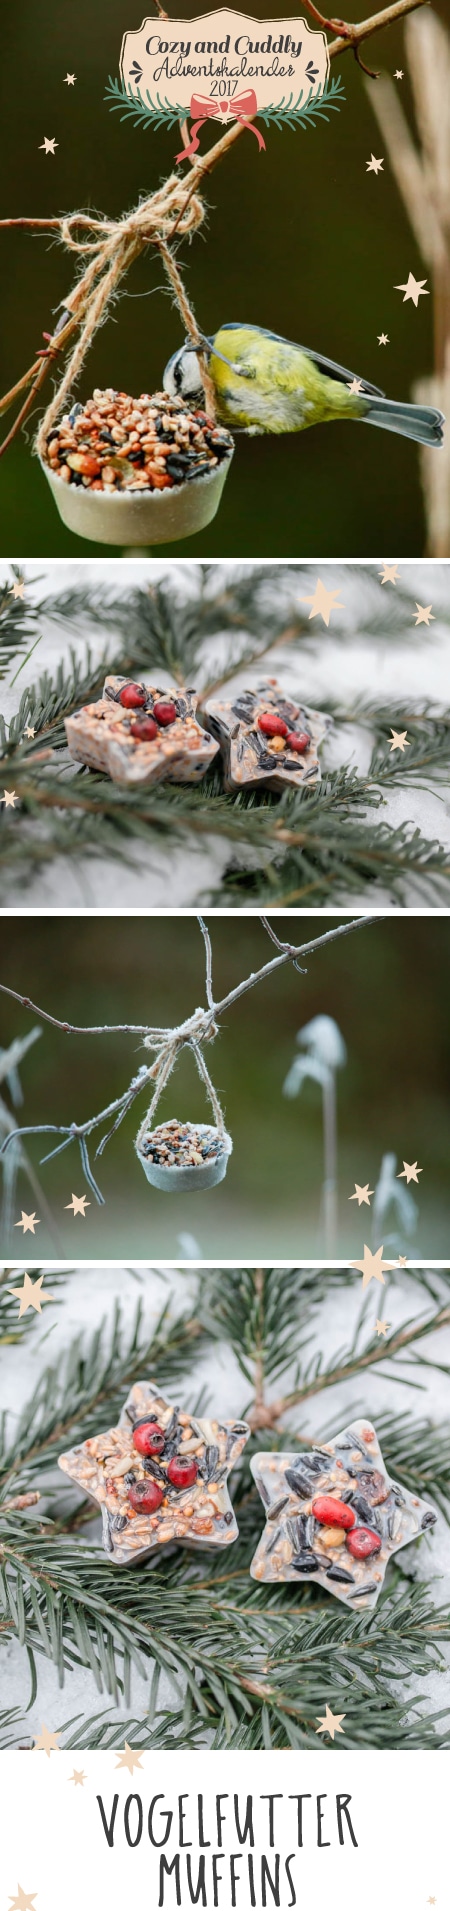 Advent: Vogelfutter-Muffins für die Vögel im Winter - cozy and cuddly Adventskalender